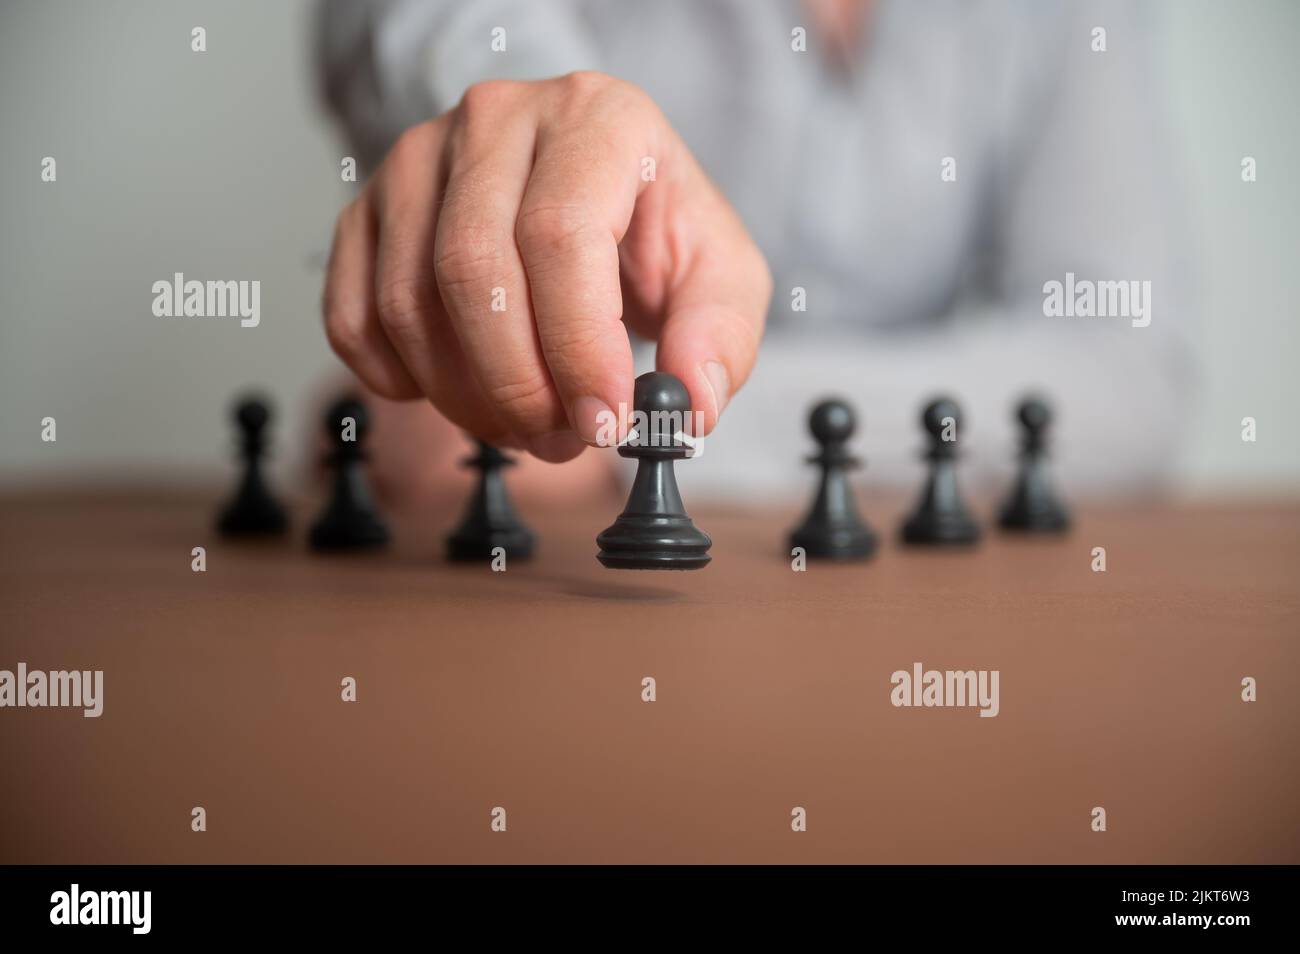 Vista de primer plano de la mano masculina caucásica moviendo una pieza de ajedrez de peón en una imagen conceptual de estrategia de negocios y tácticas. Foto de stock